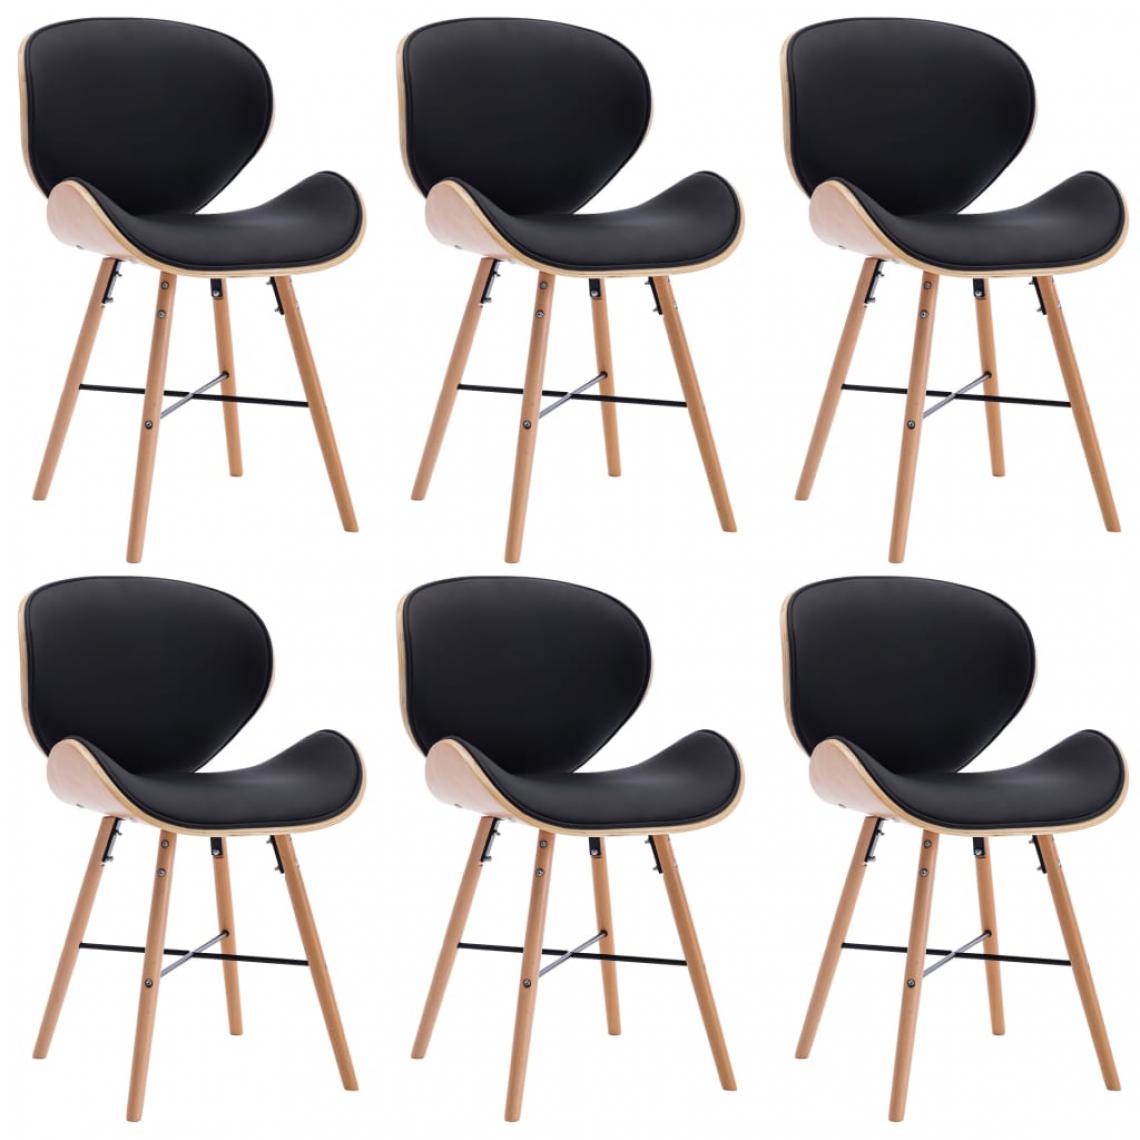 Icaverne - Splendide Fauteuils et chaises gamme Tegucigalpa Chaises de salle à manger 6 pcs Noir Similicuir et bois courbé - Chaises